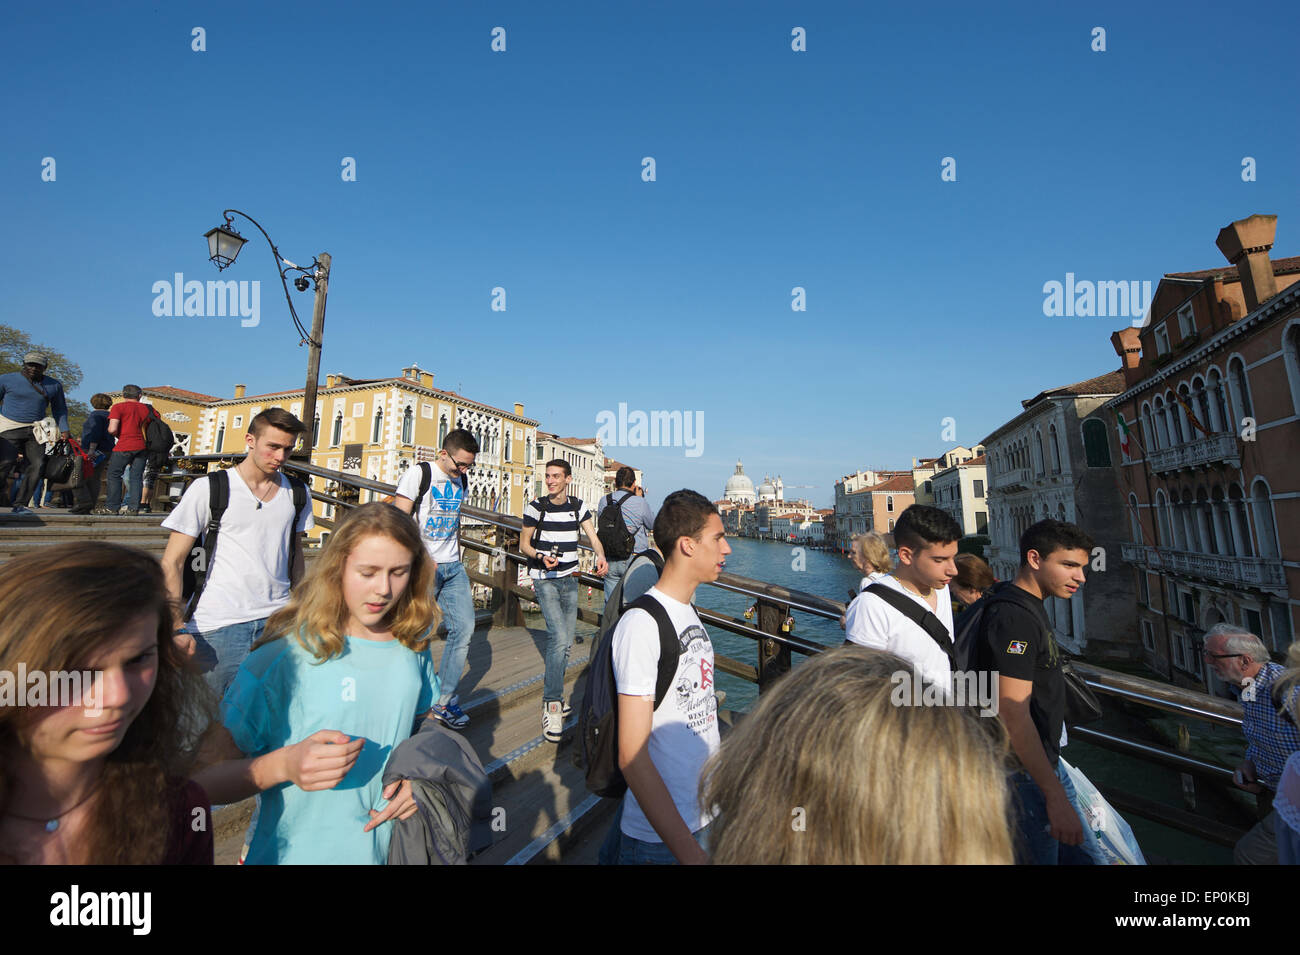 Venise, Italie - 24 avril 2013 : des foules de touristes passent le long du pont de l'Académie contre un pont sur le Grand Canal. Banque D'Images